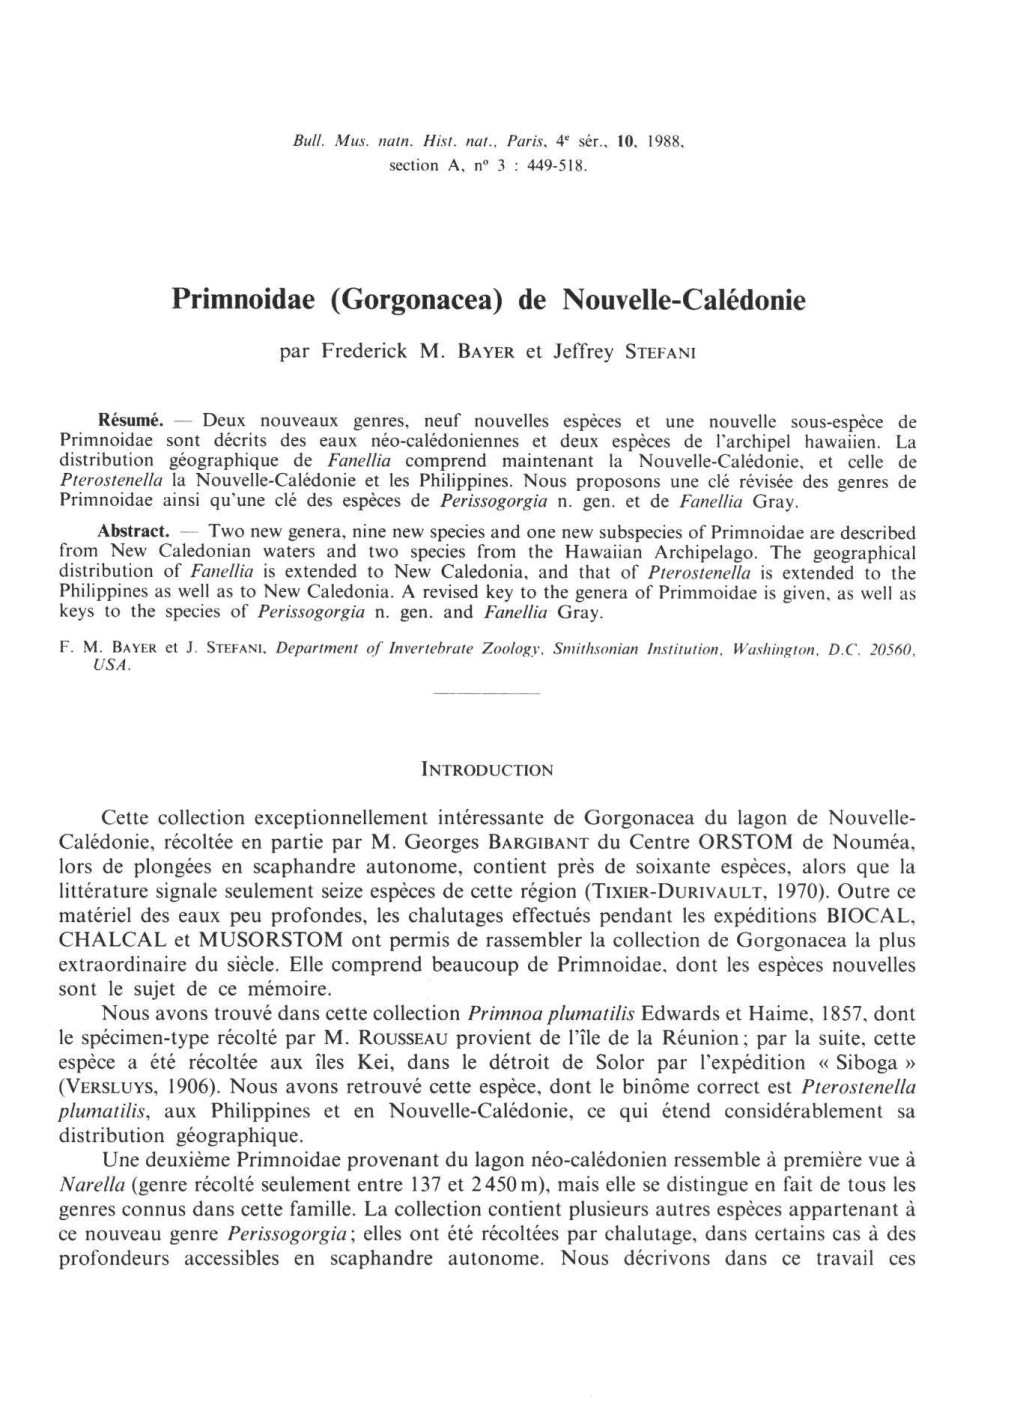 Primnoidae (Gorgonacea) De Nouvelle-Calédonie